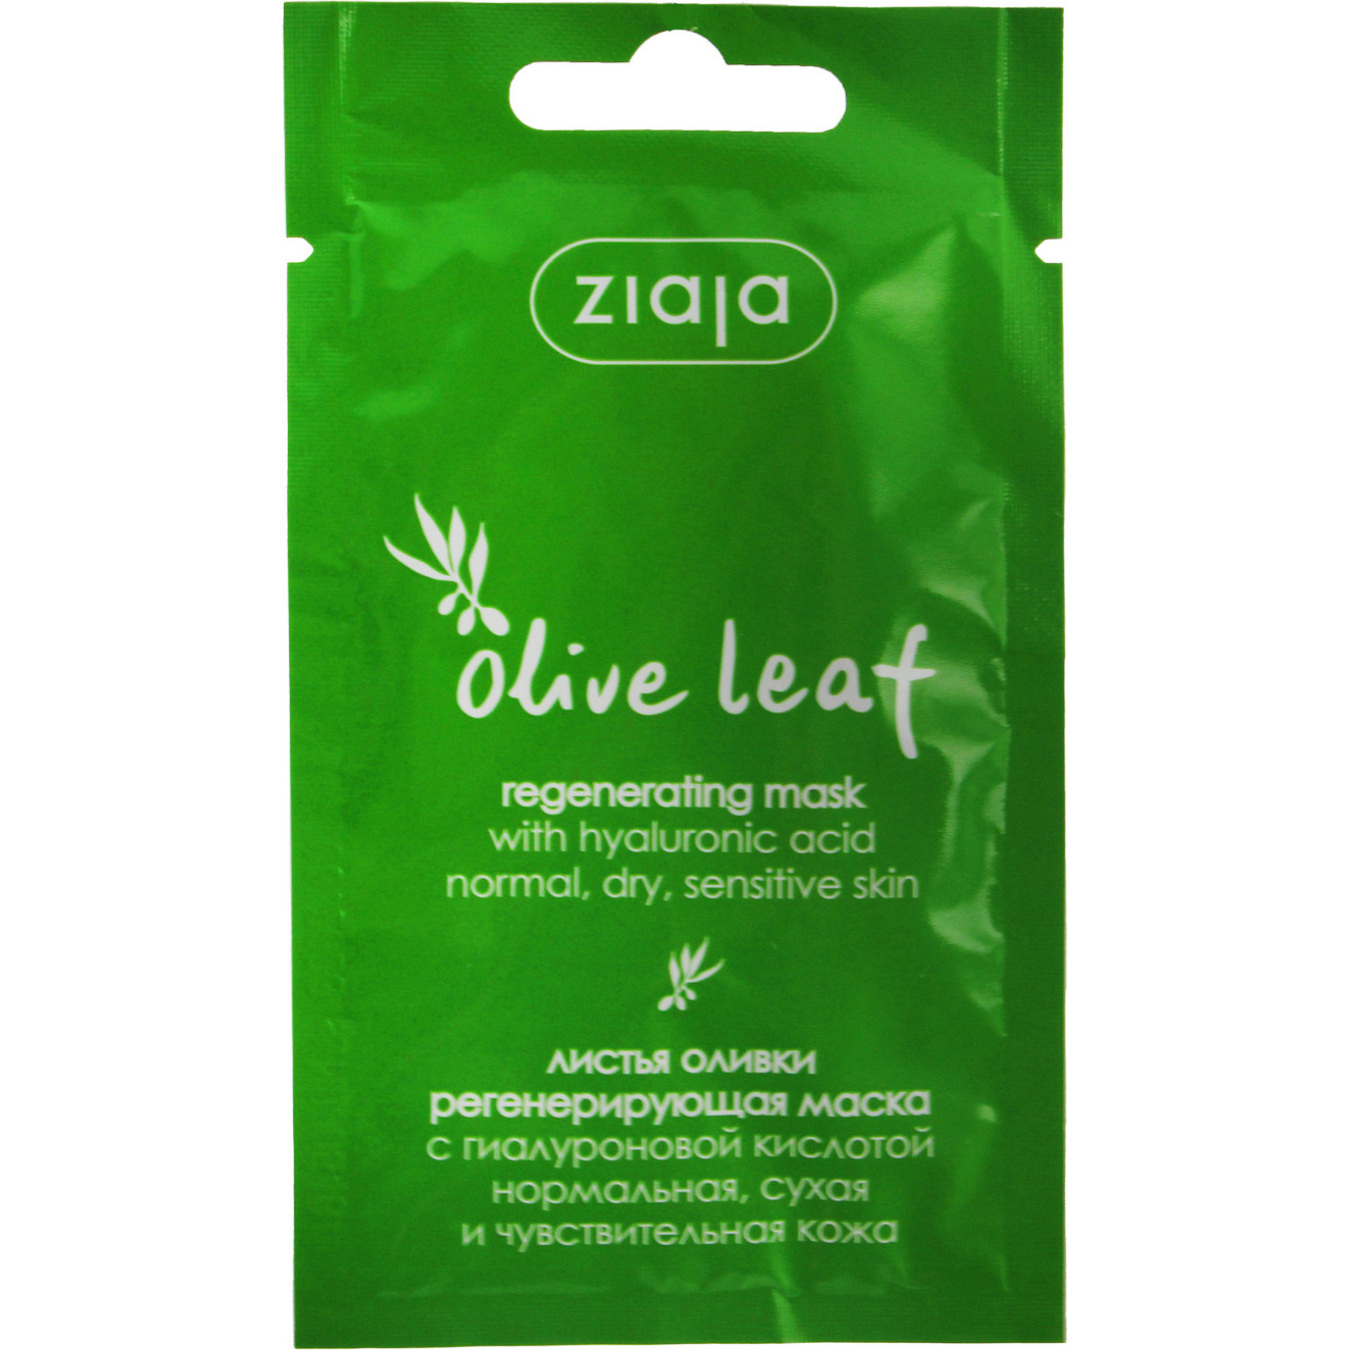 Маска для лица Ziaja регенерирующая листья масла 7 мл